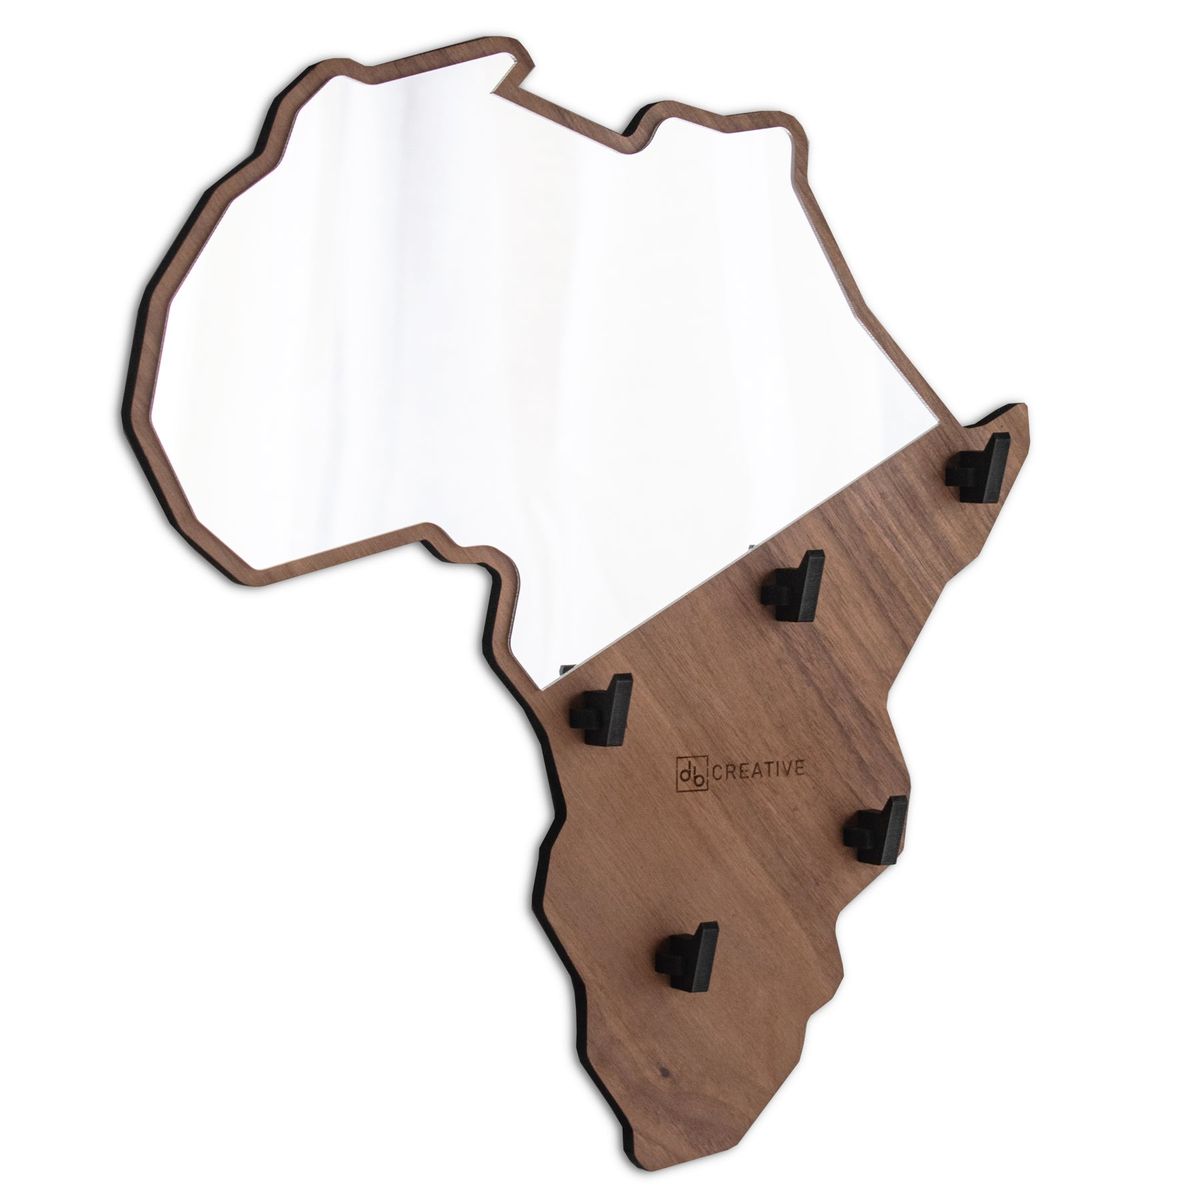 db Creative - Africa Mirror Wall Key Holder